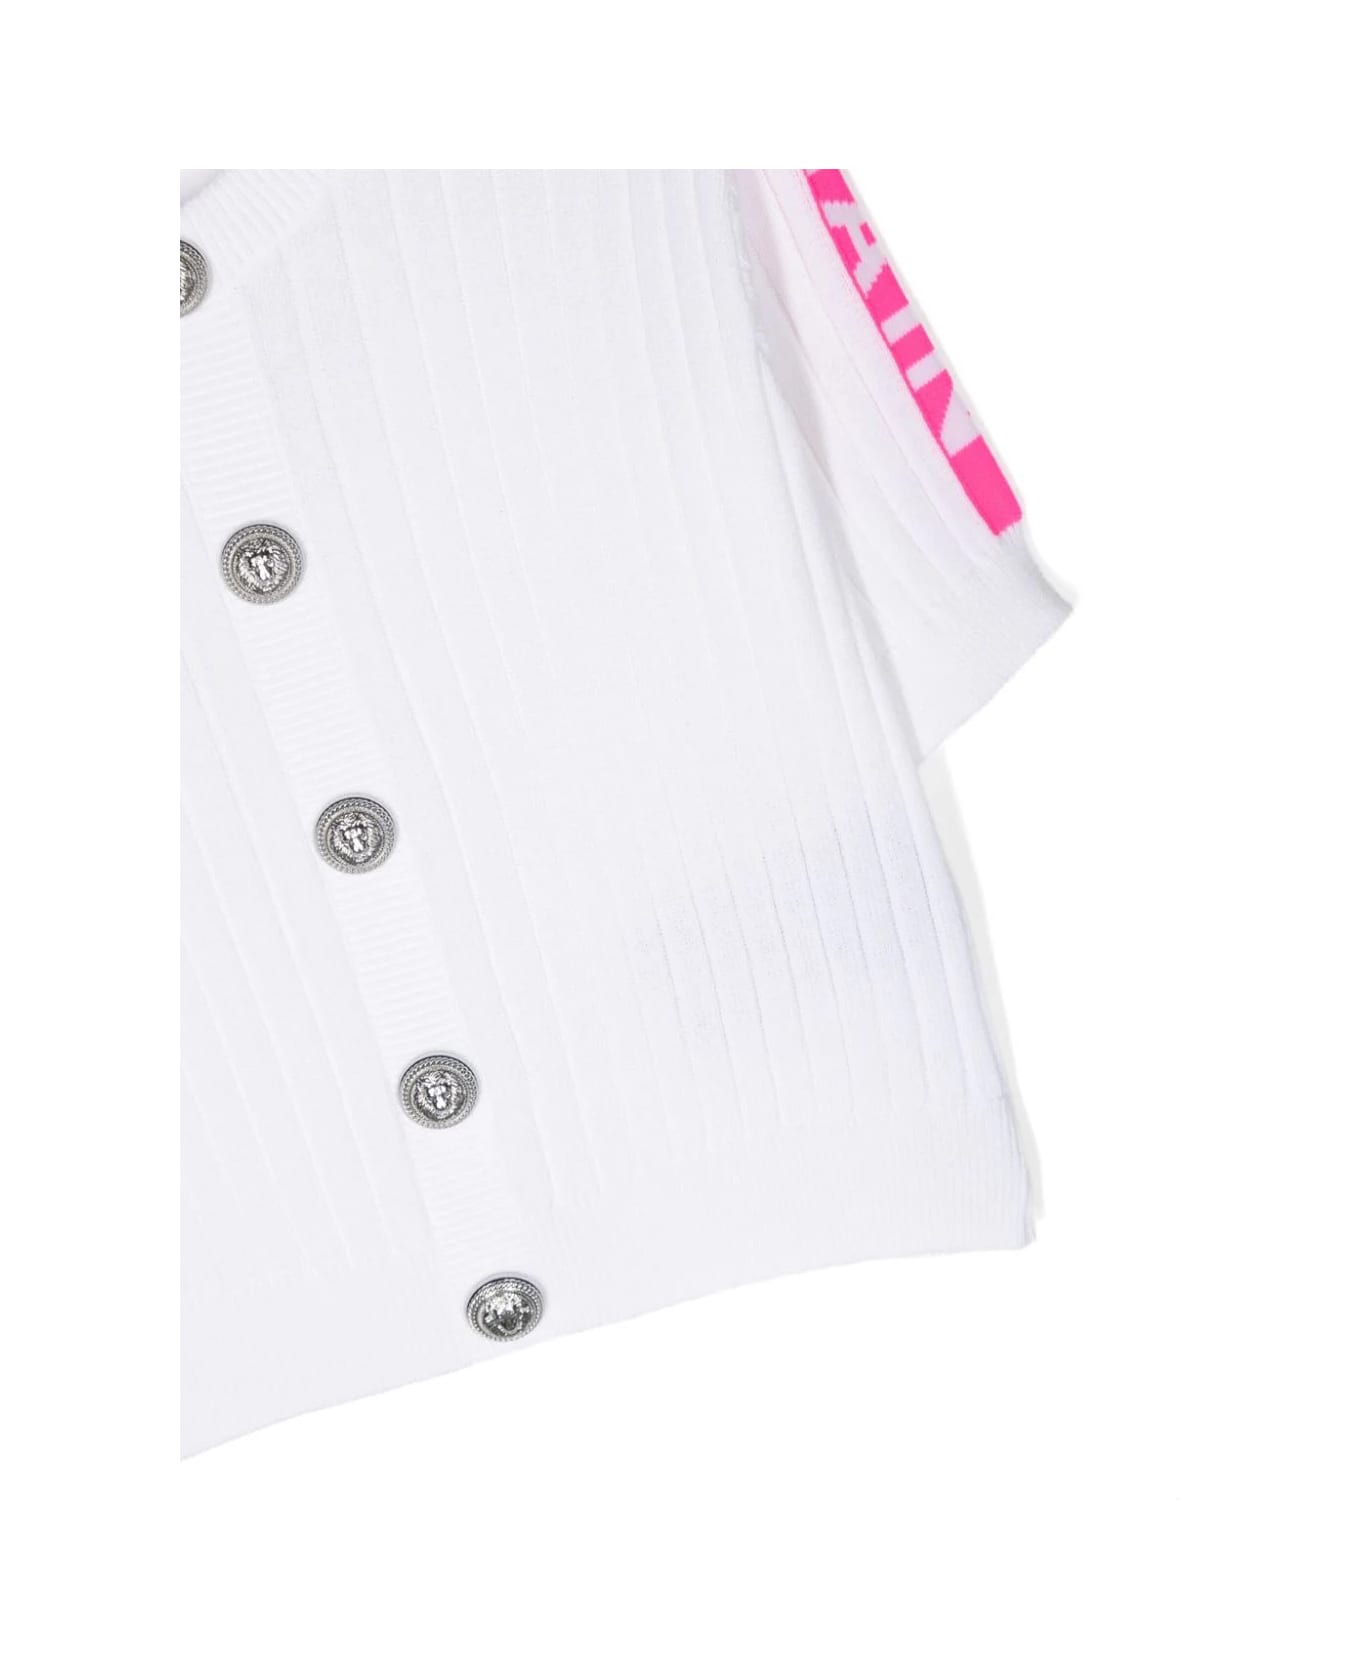 Balmain Ribbed Knit Cardigan With Jacquard Logo Motif - White